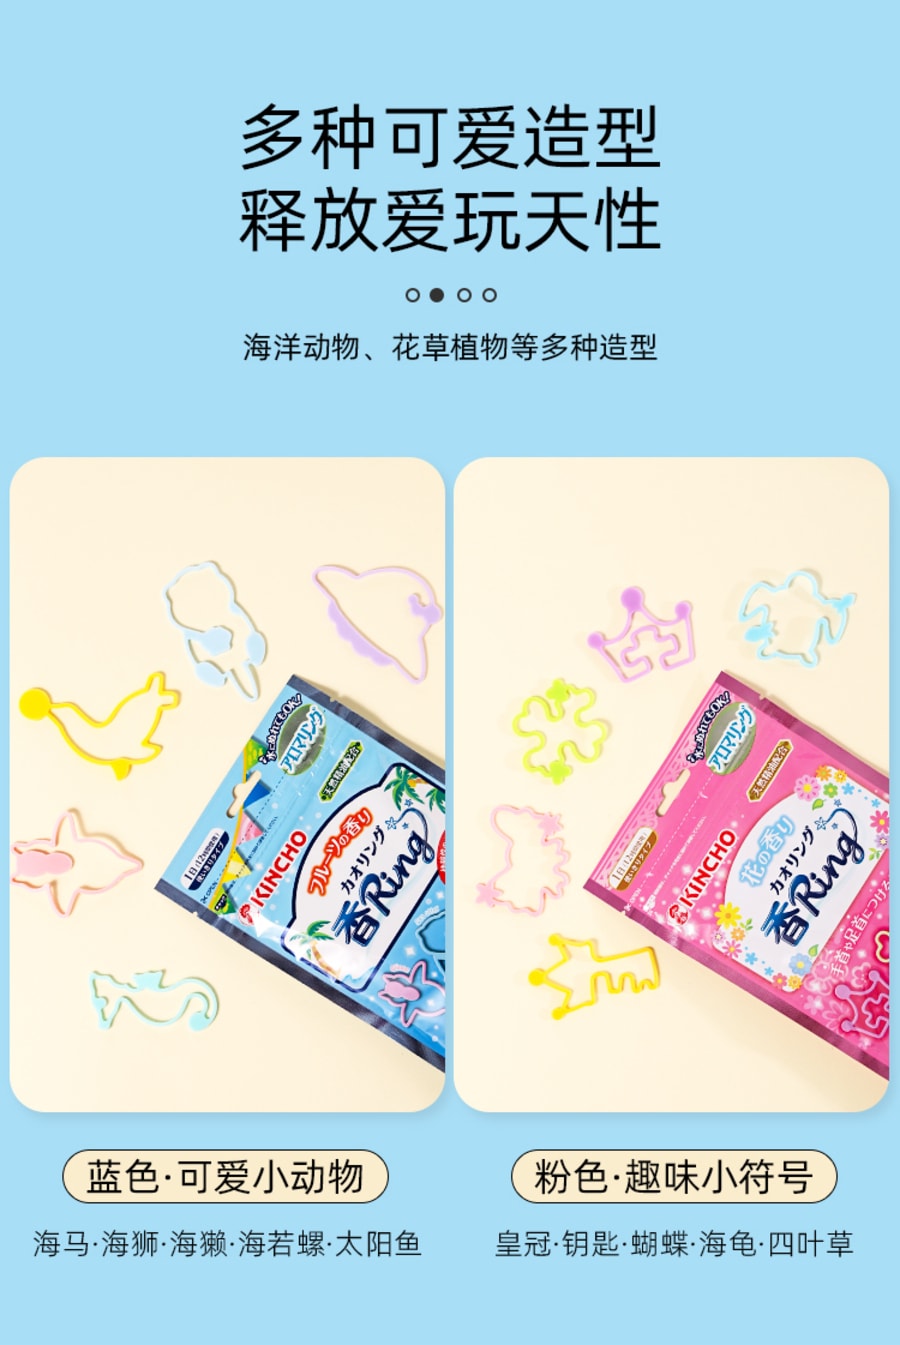 【日本直效郵件】KINCHO 金鳥 驅蚊 驅蟲手環 天然成分 成人 兒童皆可使用 30入 粉紅色花香